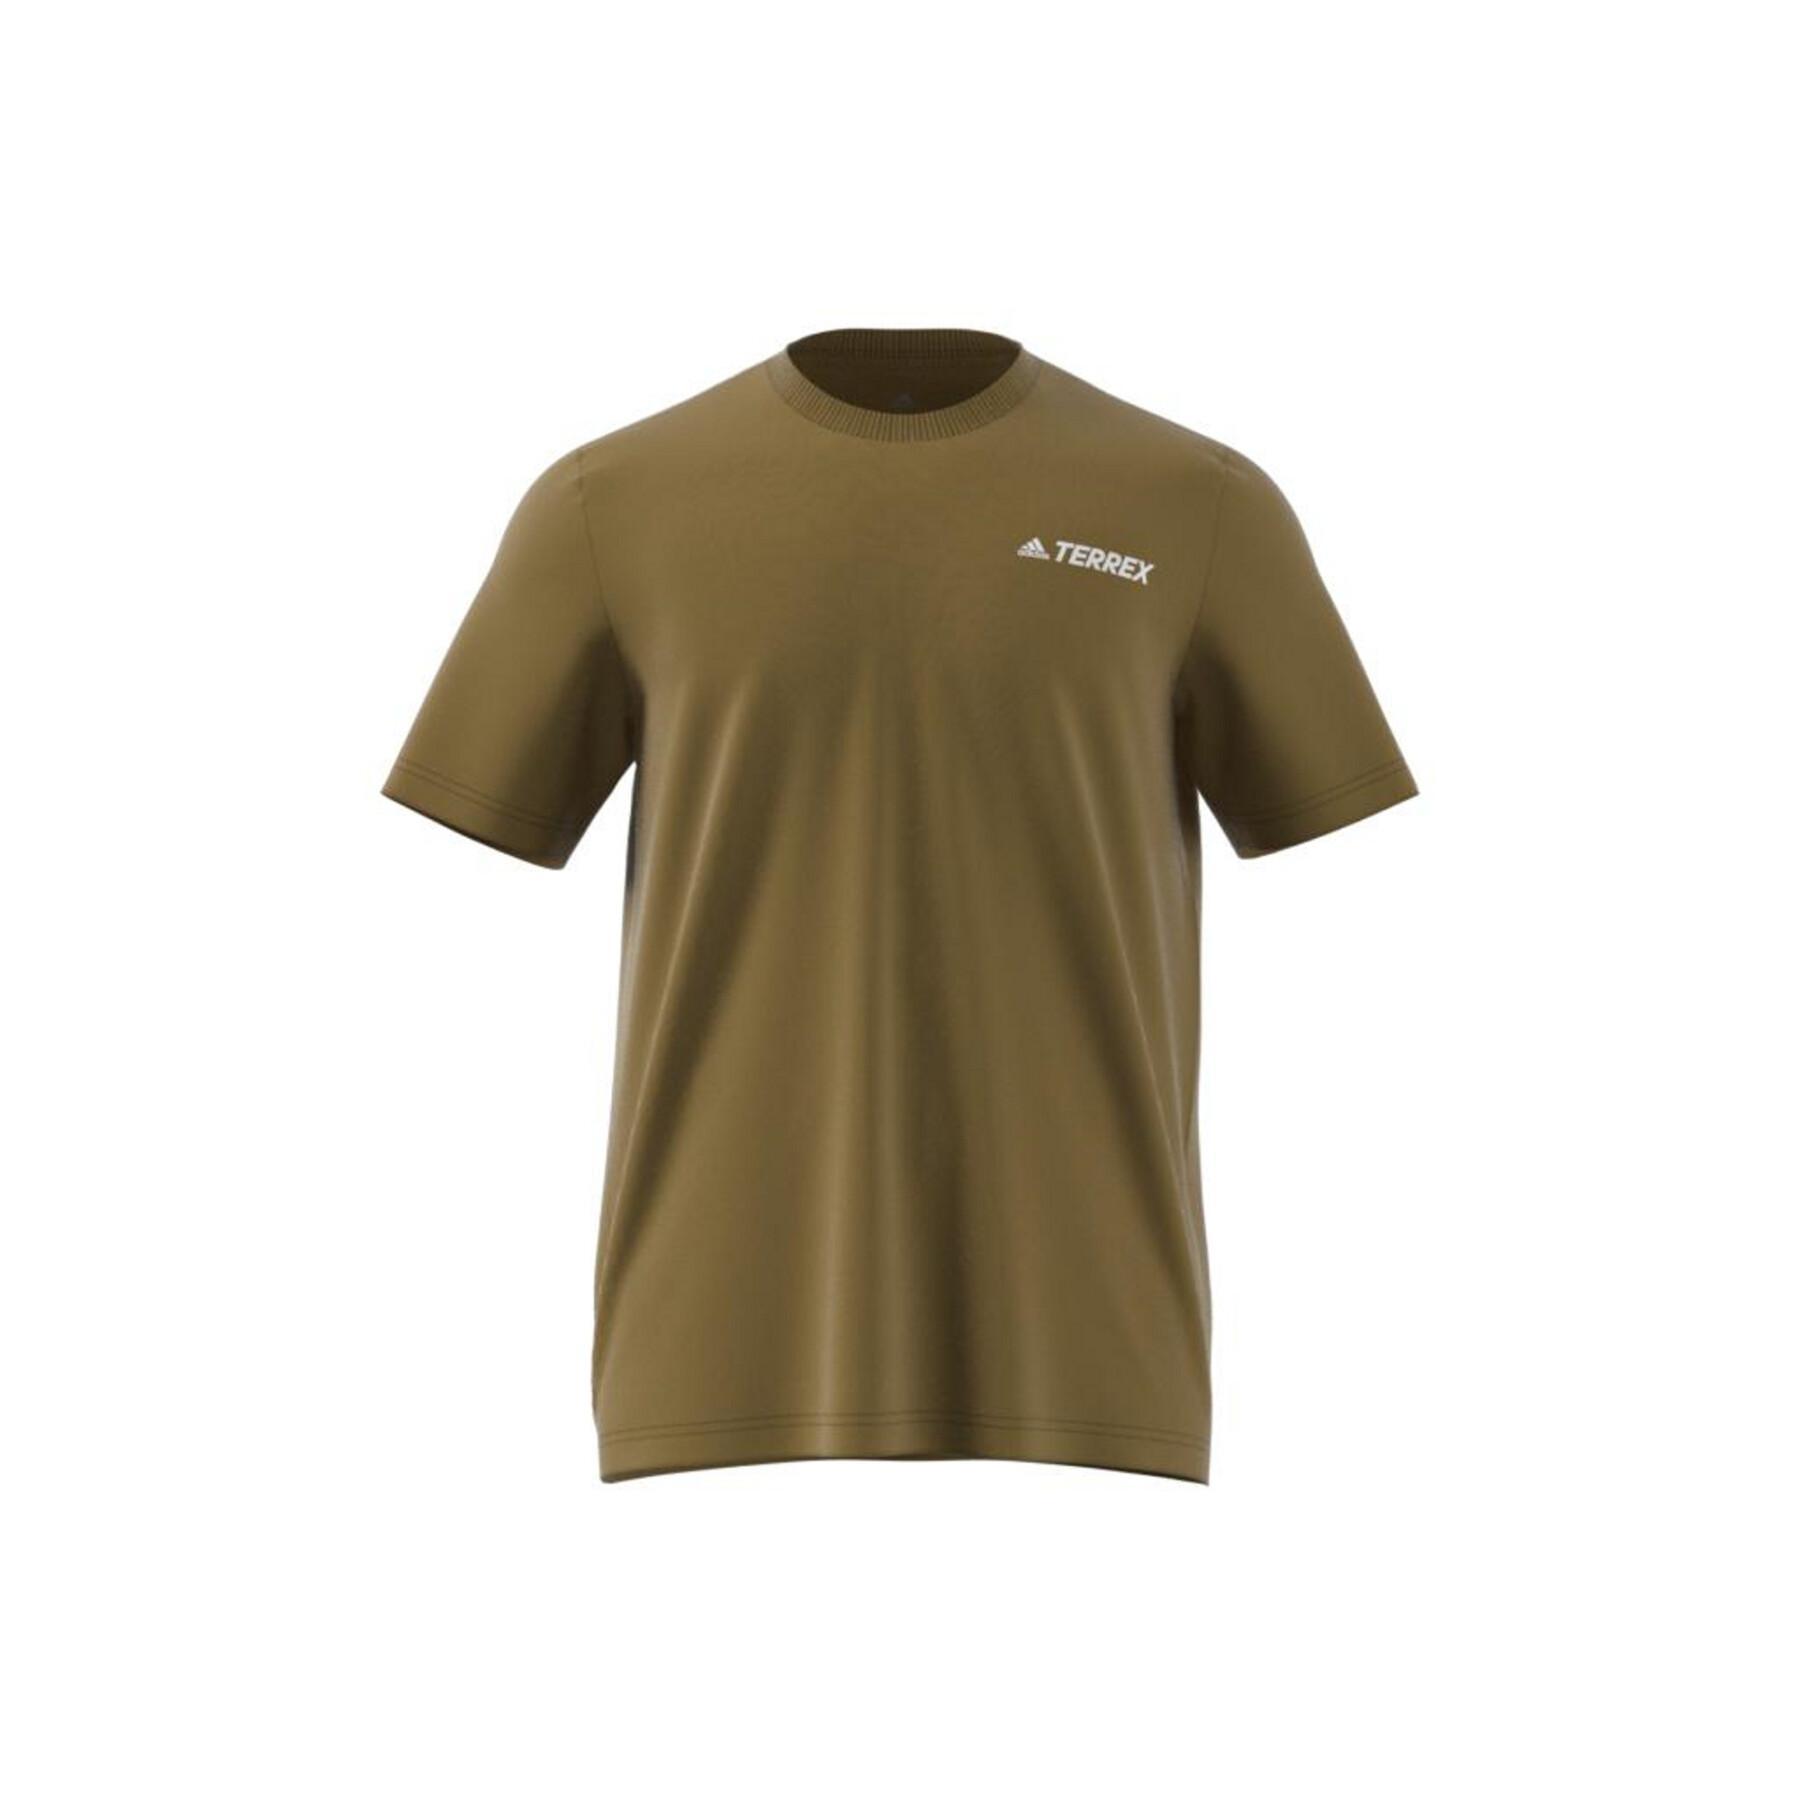 Camiseta adidas Terrex Mountain Graphic